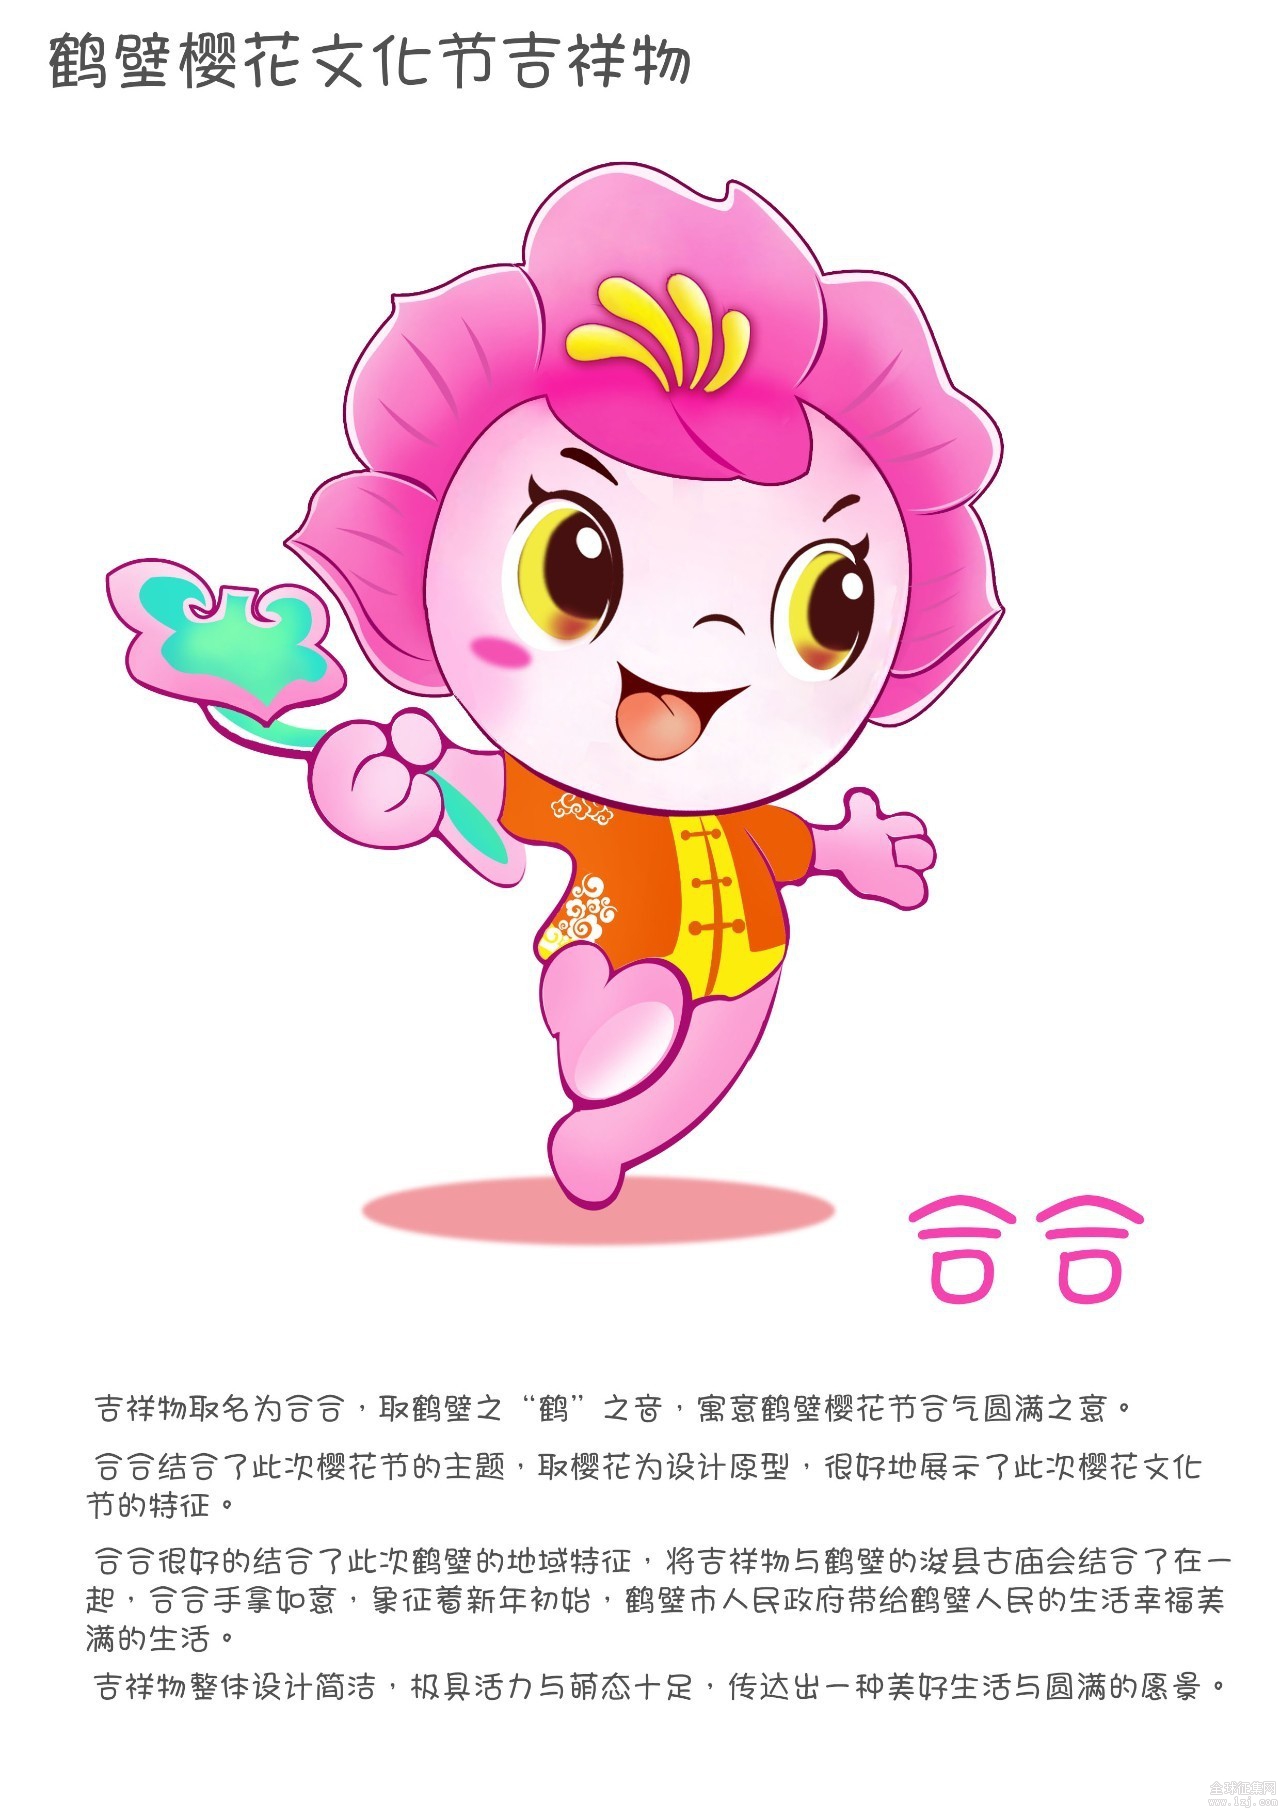 樱花文化节吉祥物设计方案投票